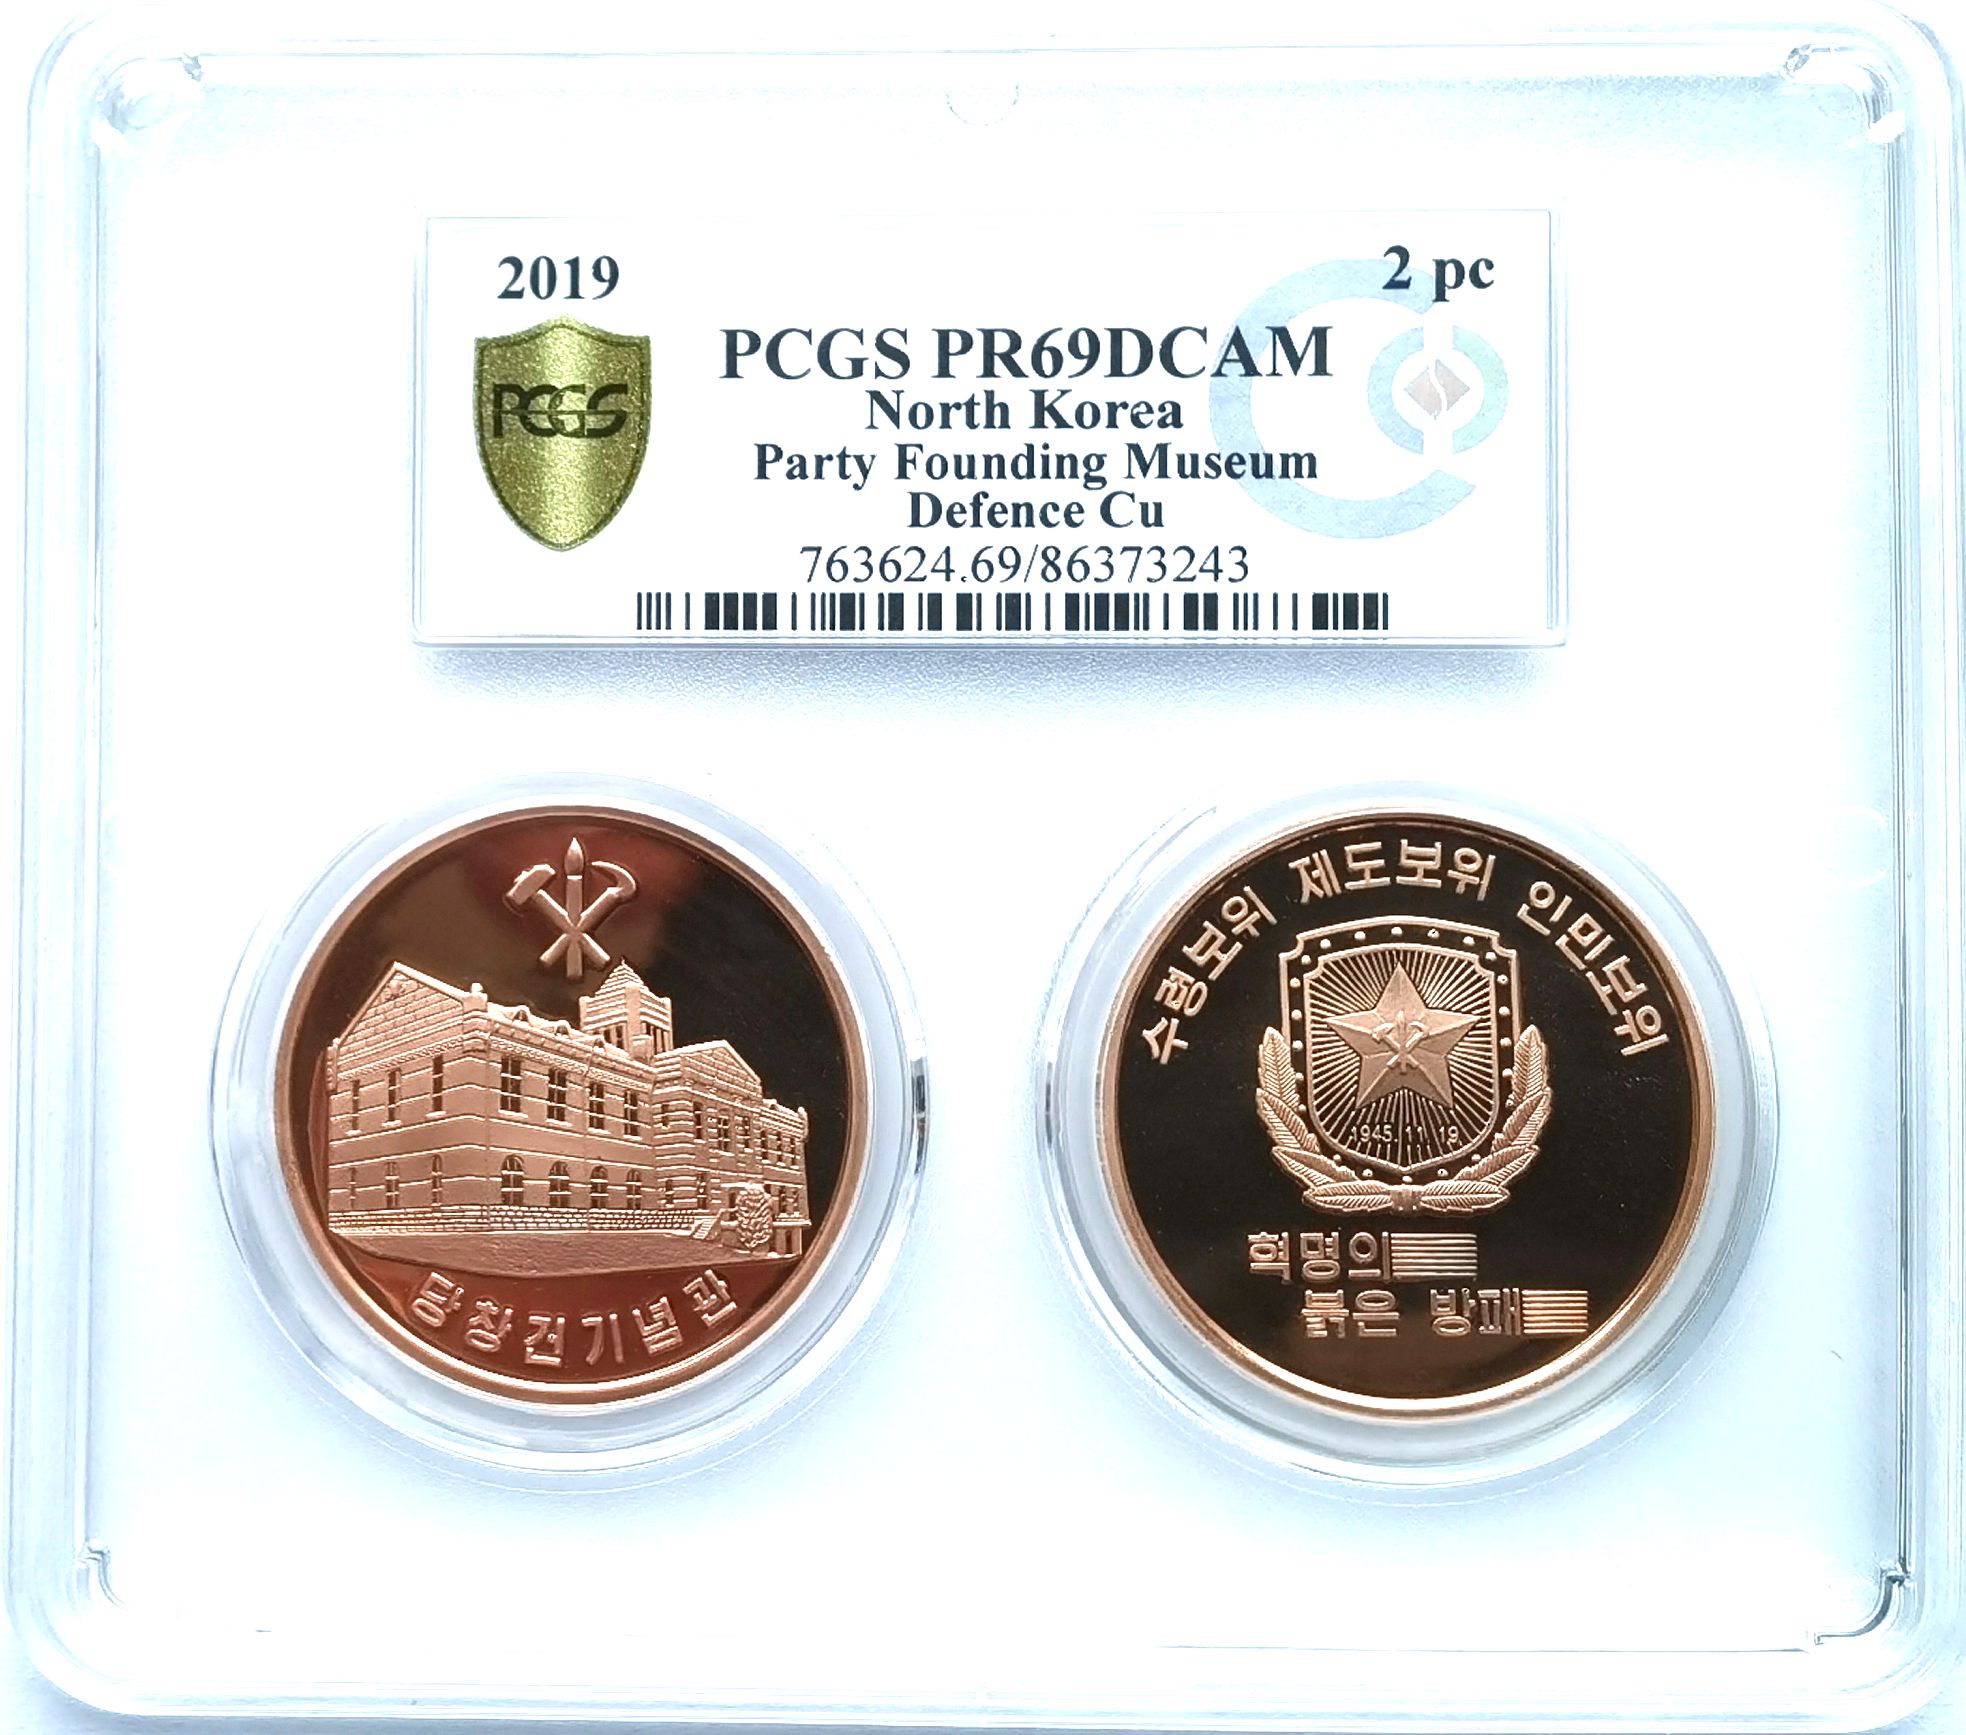 L3394, Korea 2 Pcs Coins "Party Founding Defence", Bronze 2019, PCGS69 DCAM